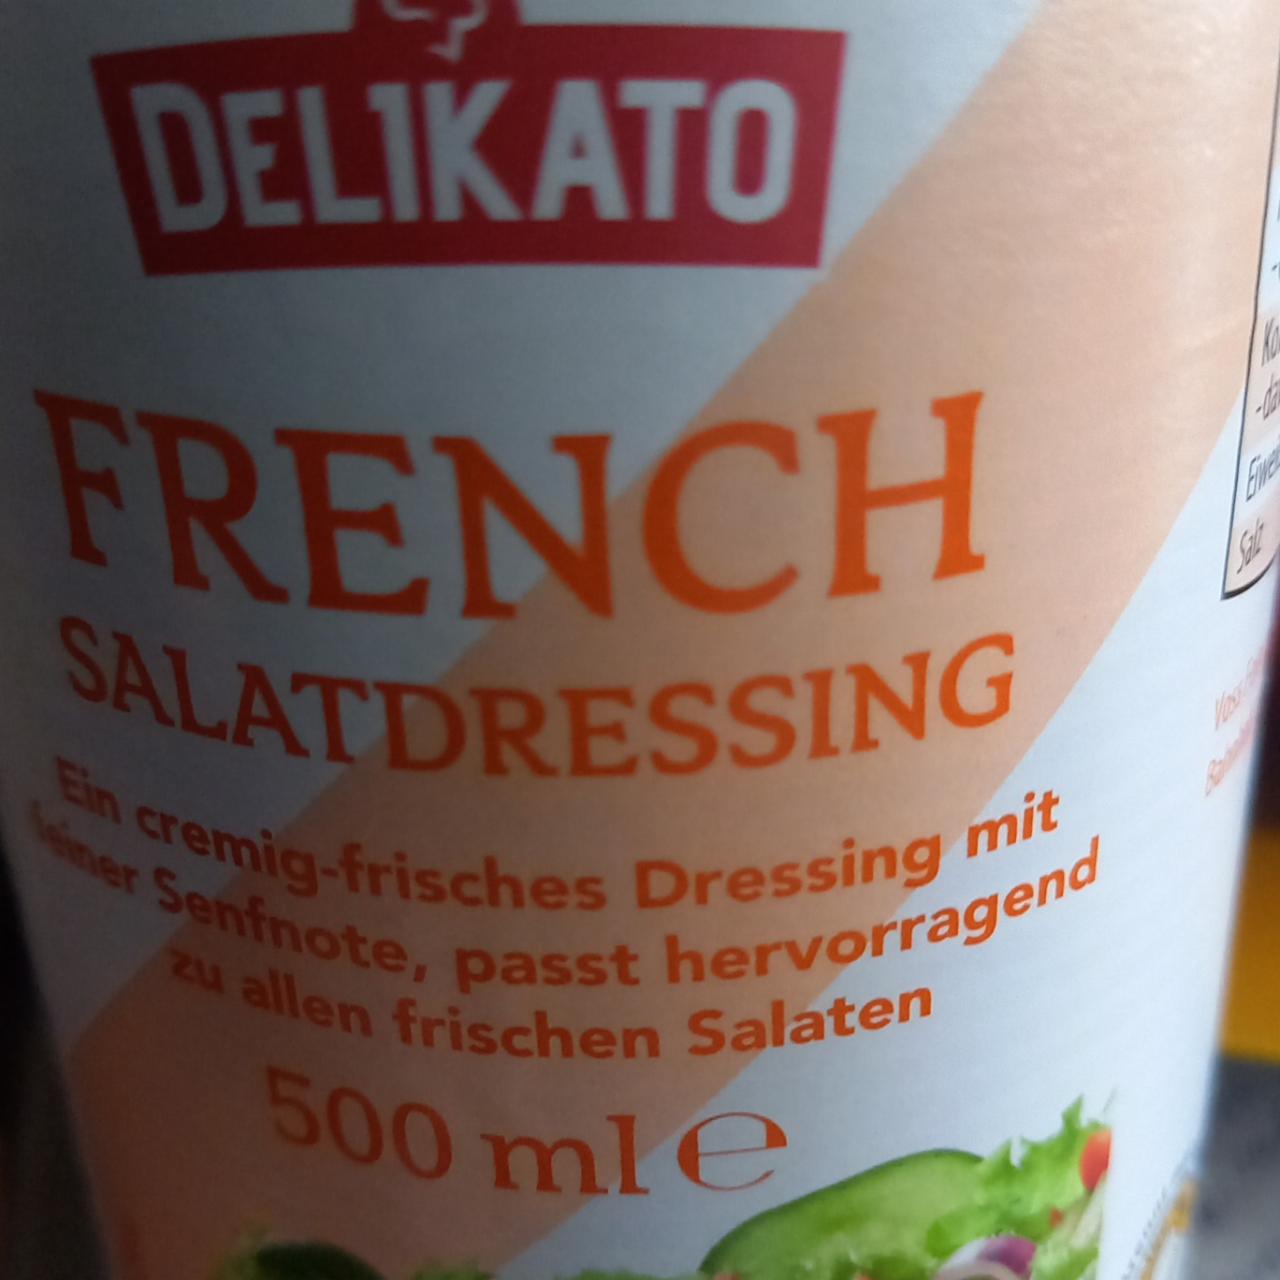 Fotografie - French Salatdtessing Delikato